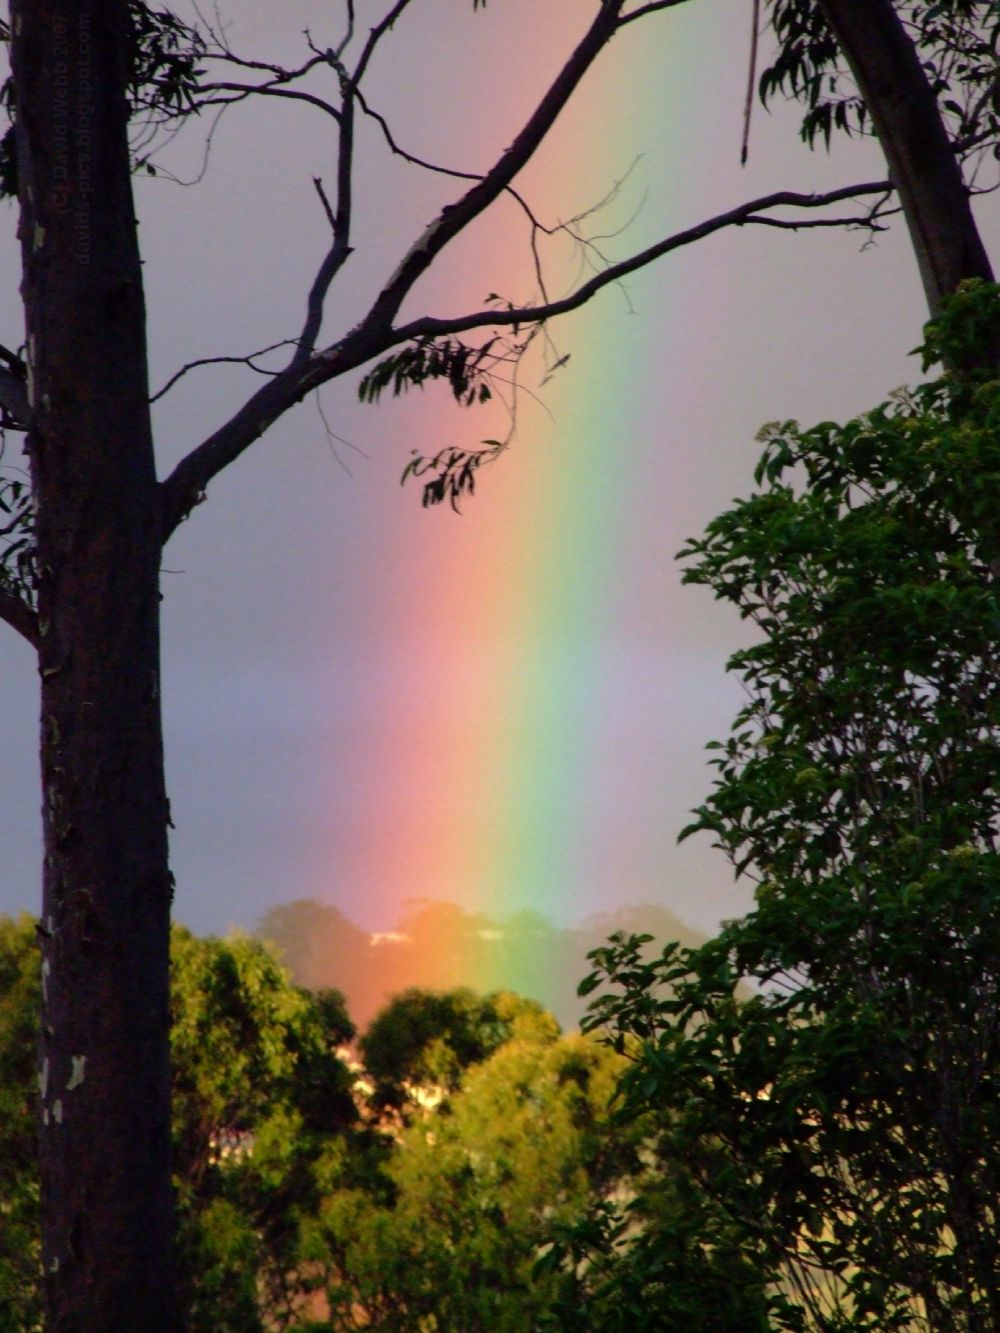 Rainbow after the rain: The end of the Rainbow - is there a pot of gold at the end of the rainbow? - colors of the rainbow